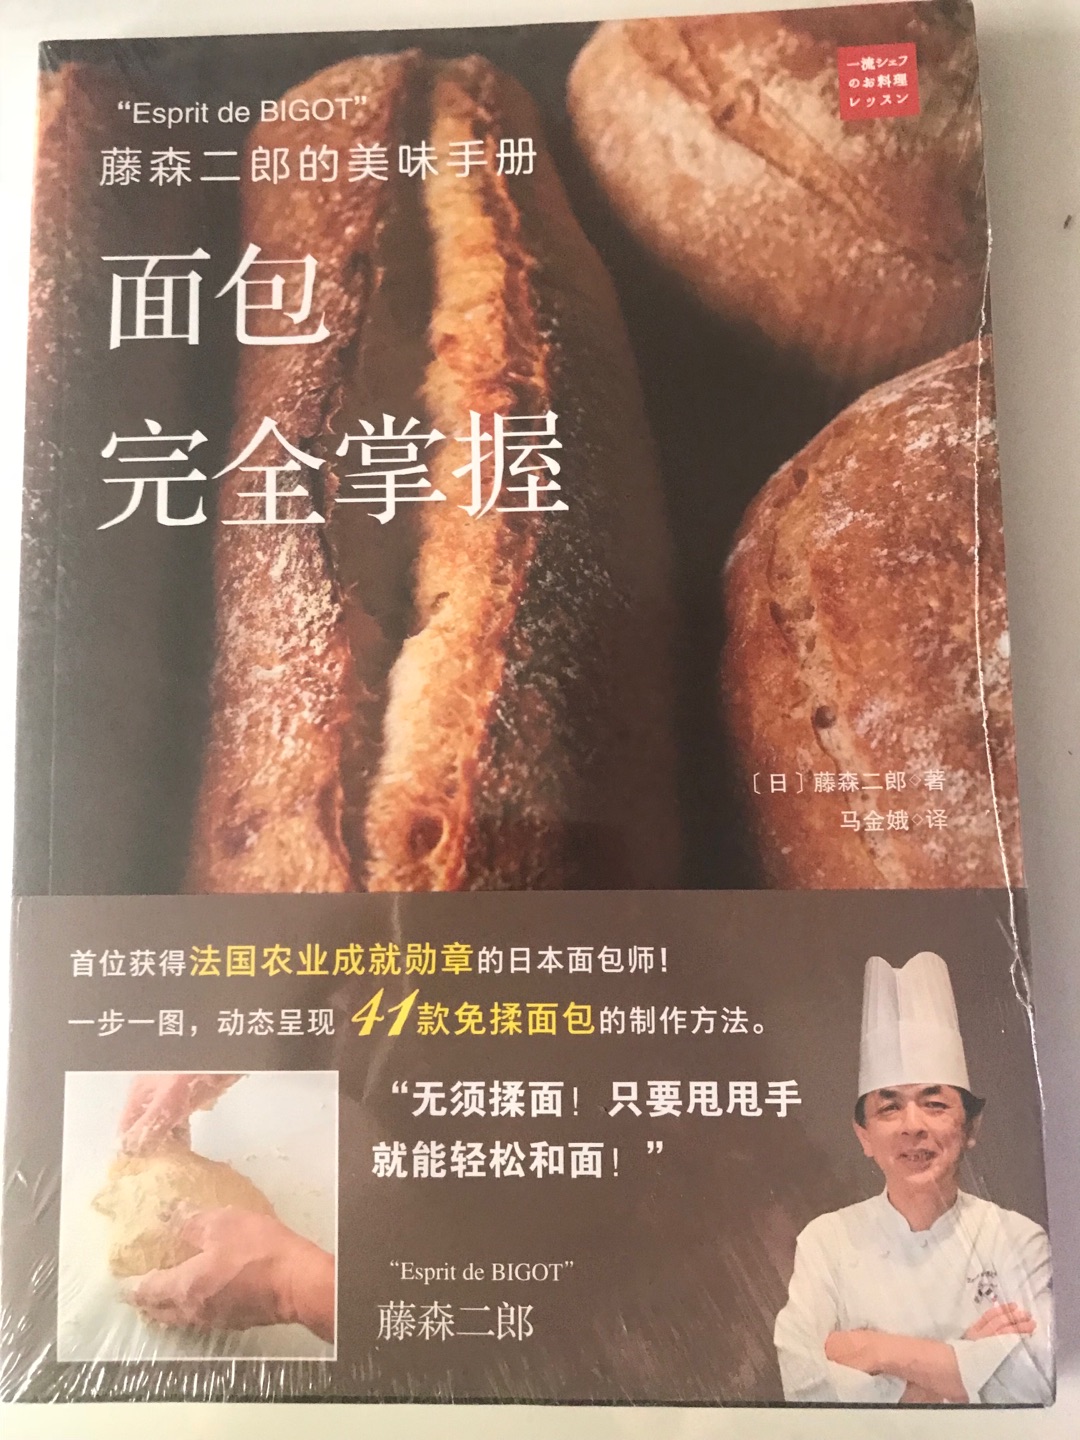 这本书很详细介绍了每一种面包的详细做法。很适合非专业人员学烘培的需要！